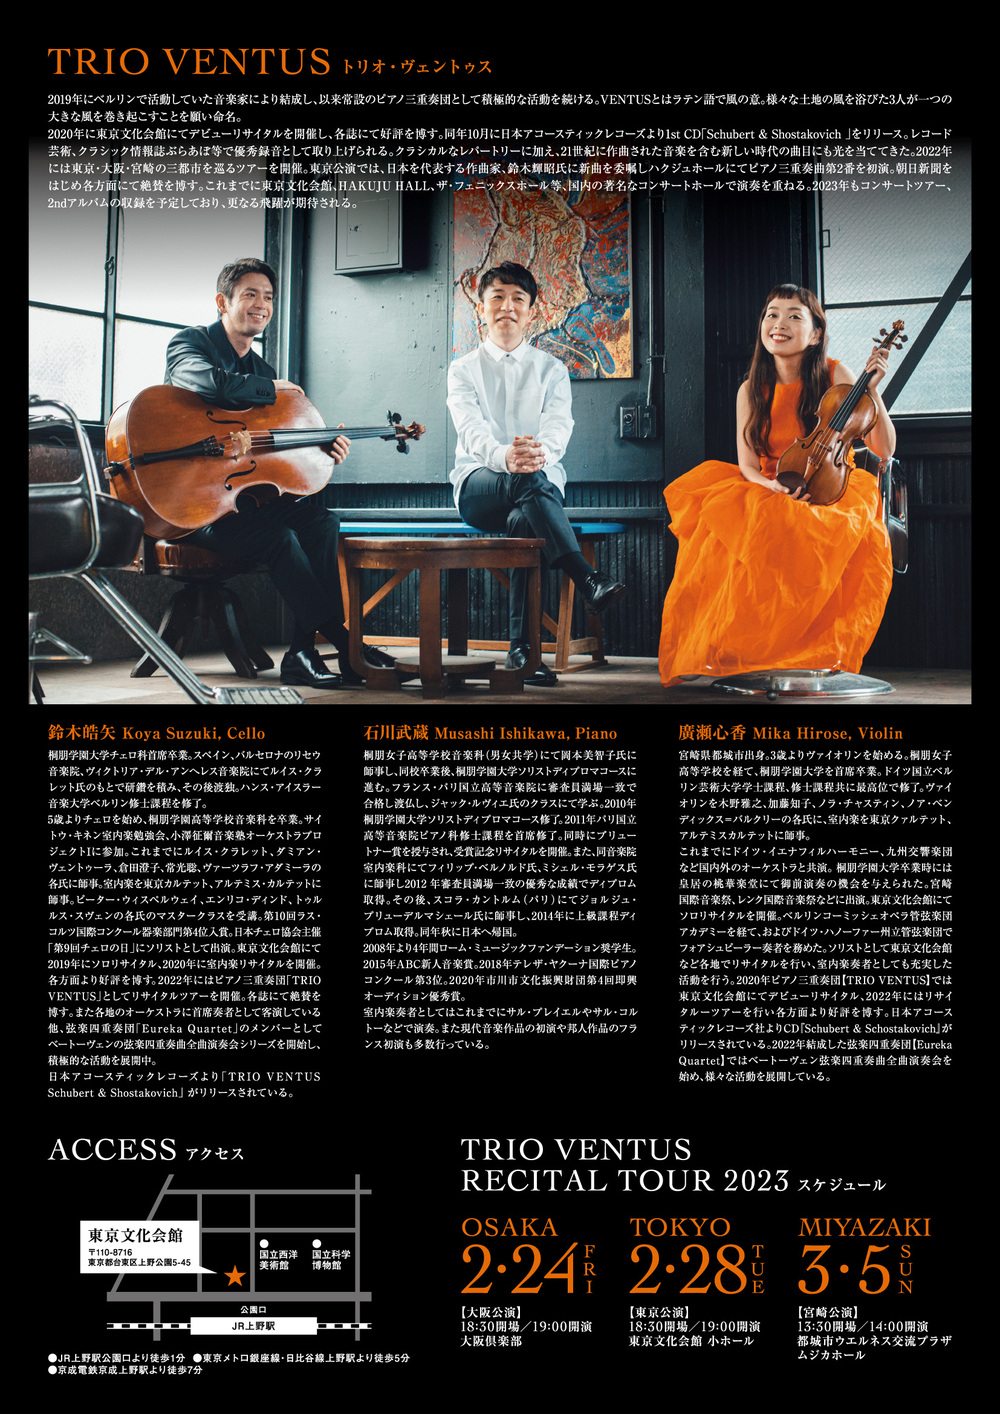 TRIO VENTUS Recital tour 2023 Tokyo【TRIO VENTUS】 | 東京文化会館 小ホール